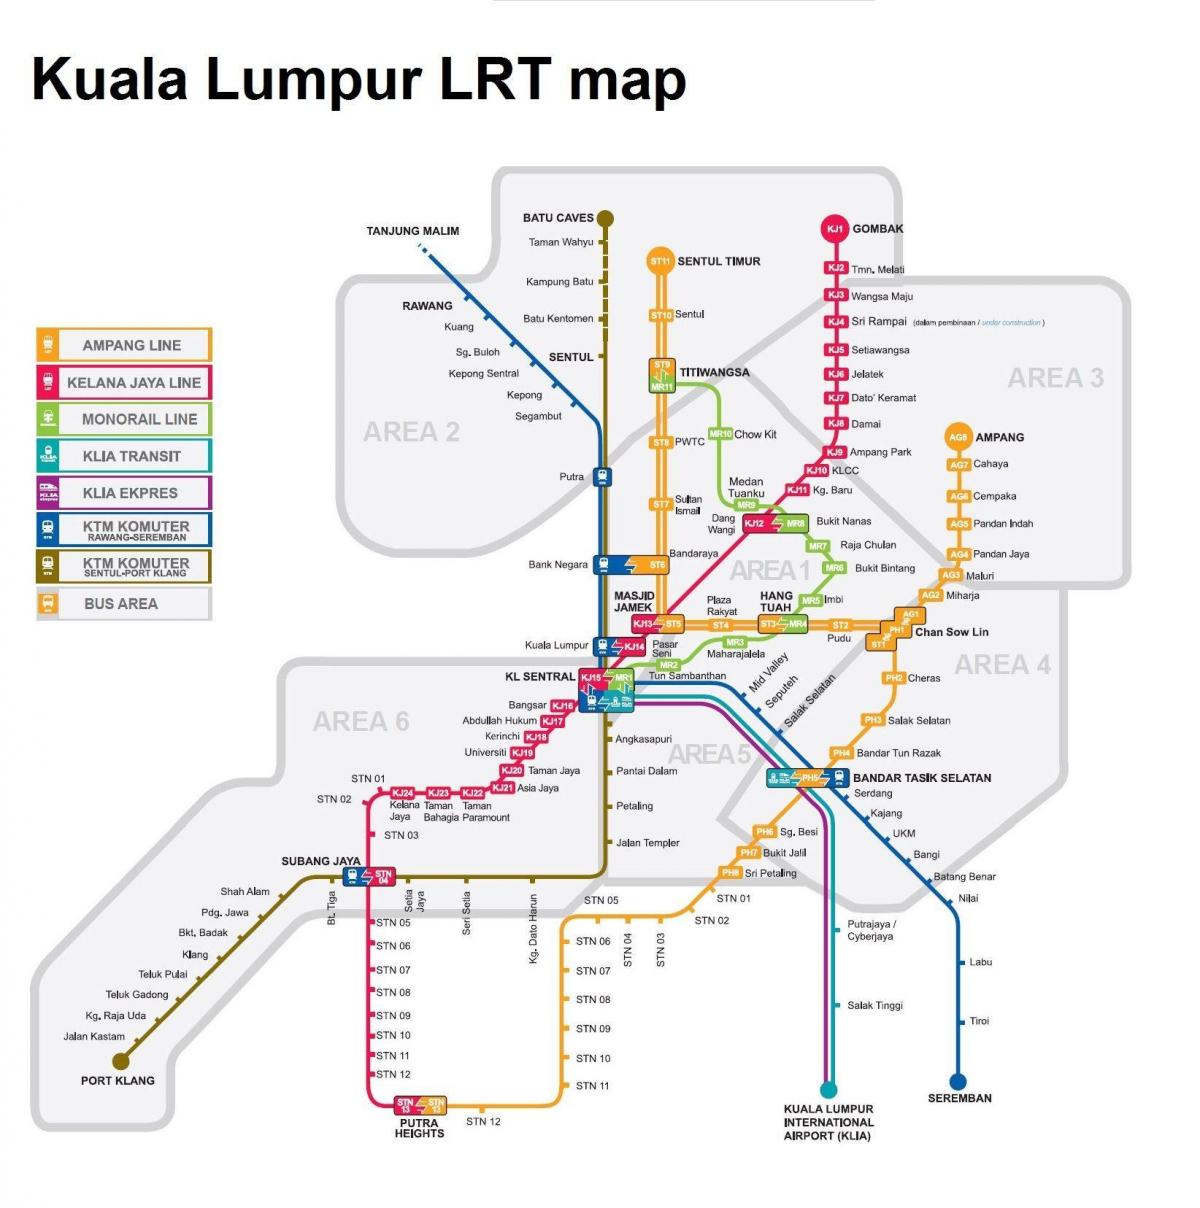 lrt mapa malaysia 2016